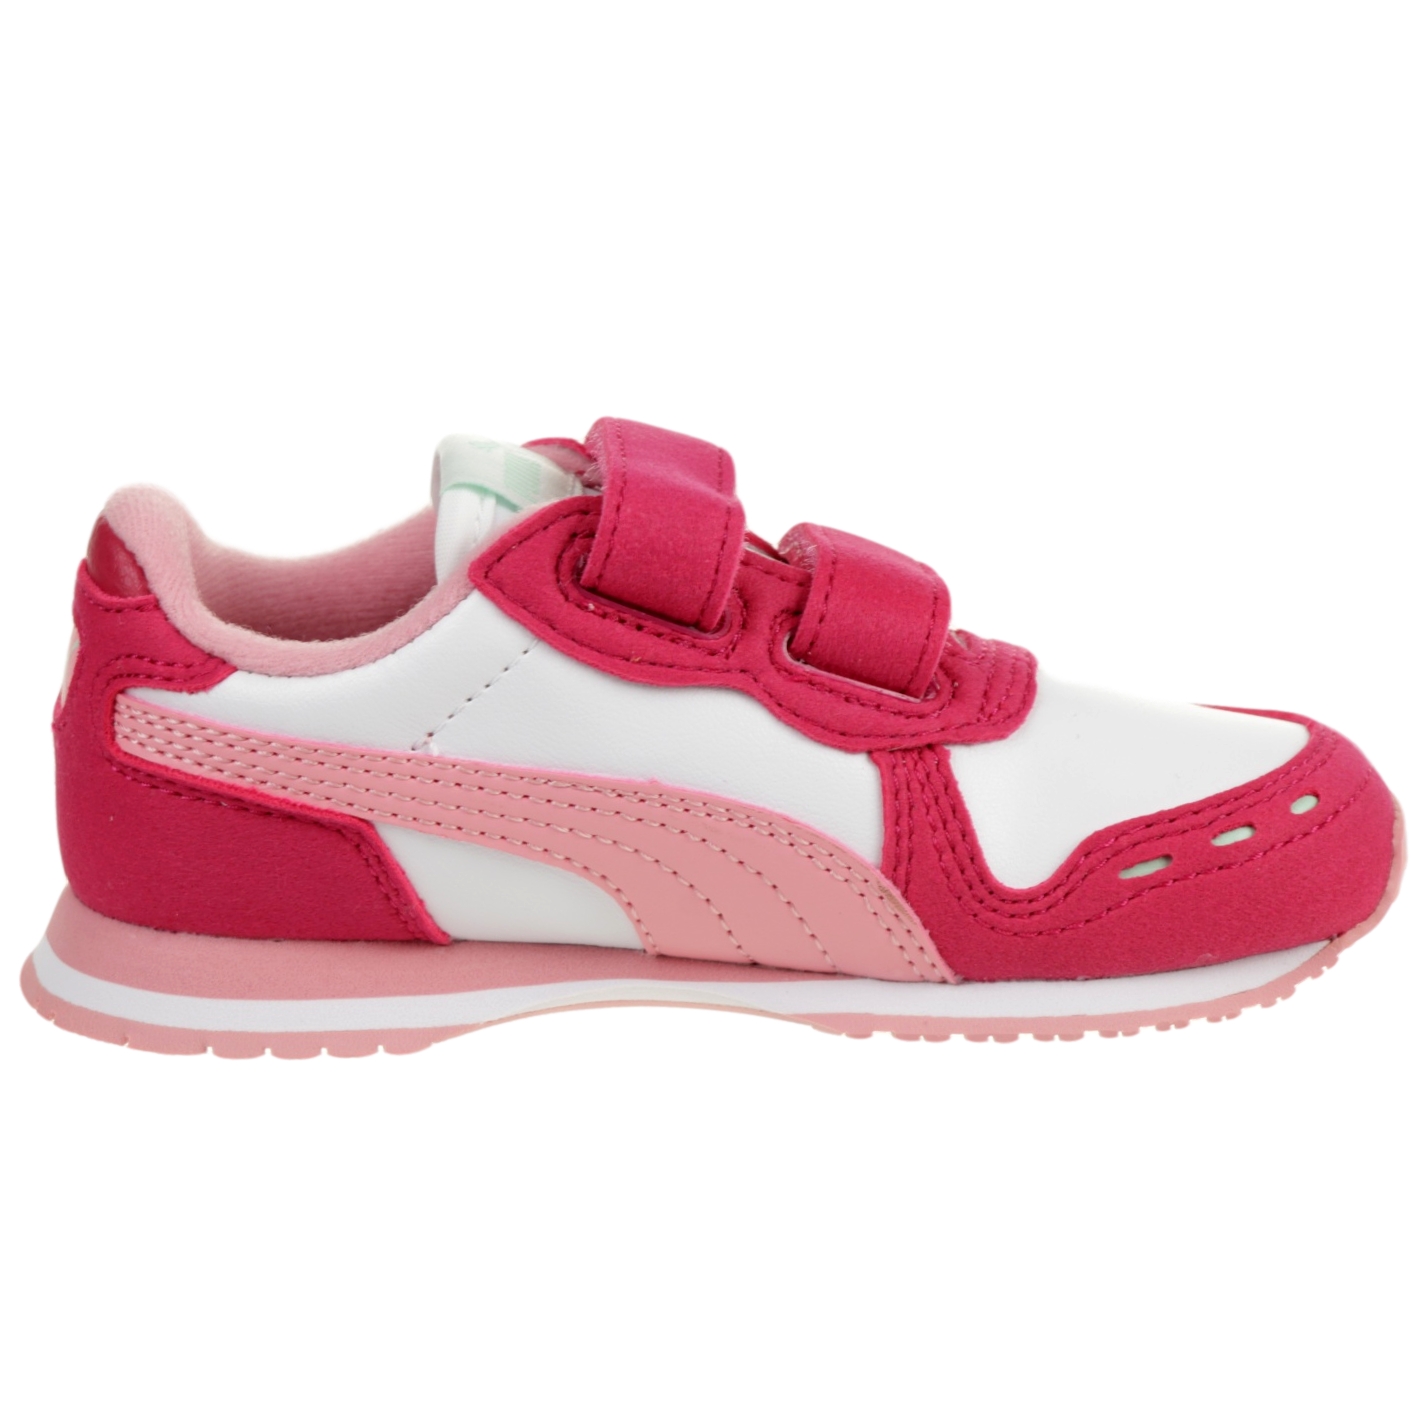 PUMA Cabana Racer SL V Inf Kinder Sneaker Schuhe 351980 Pink